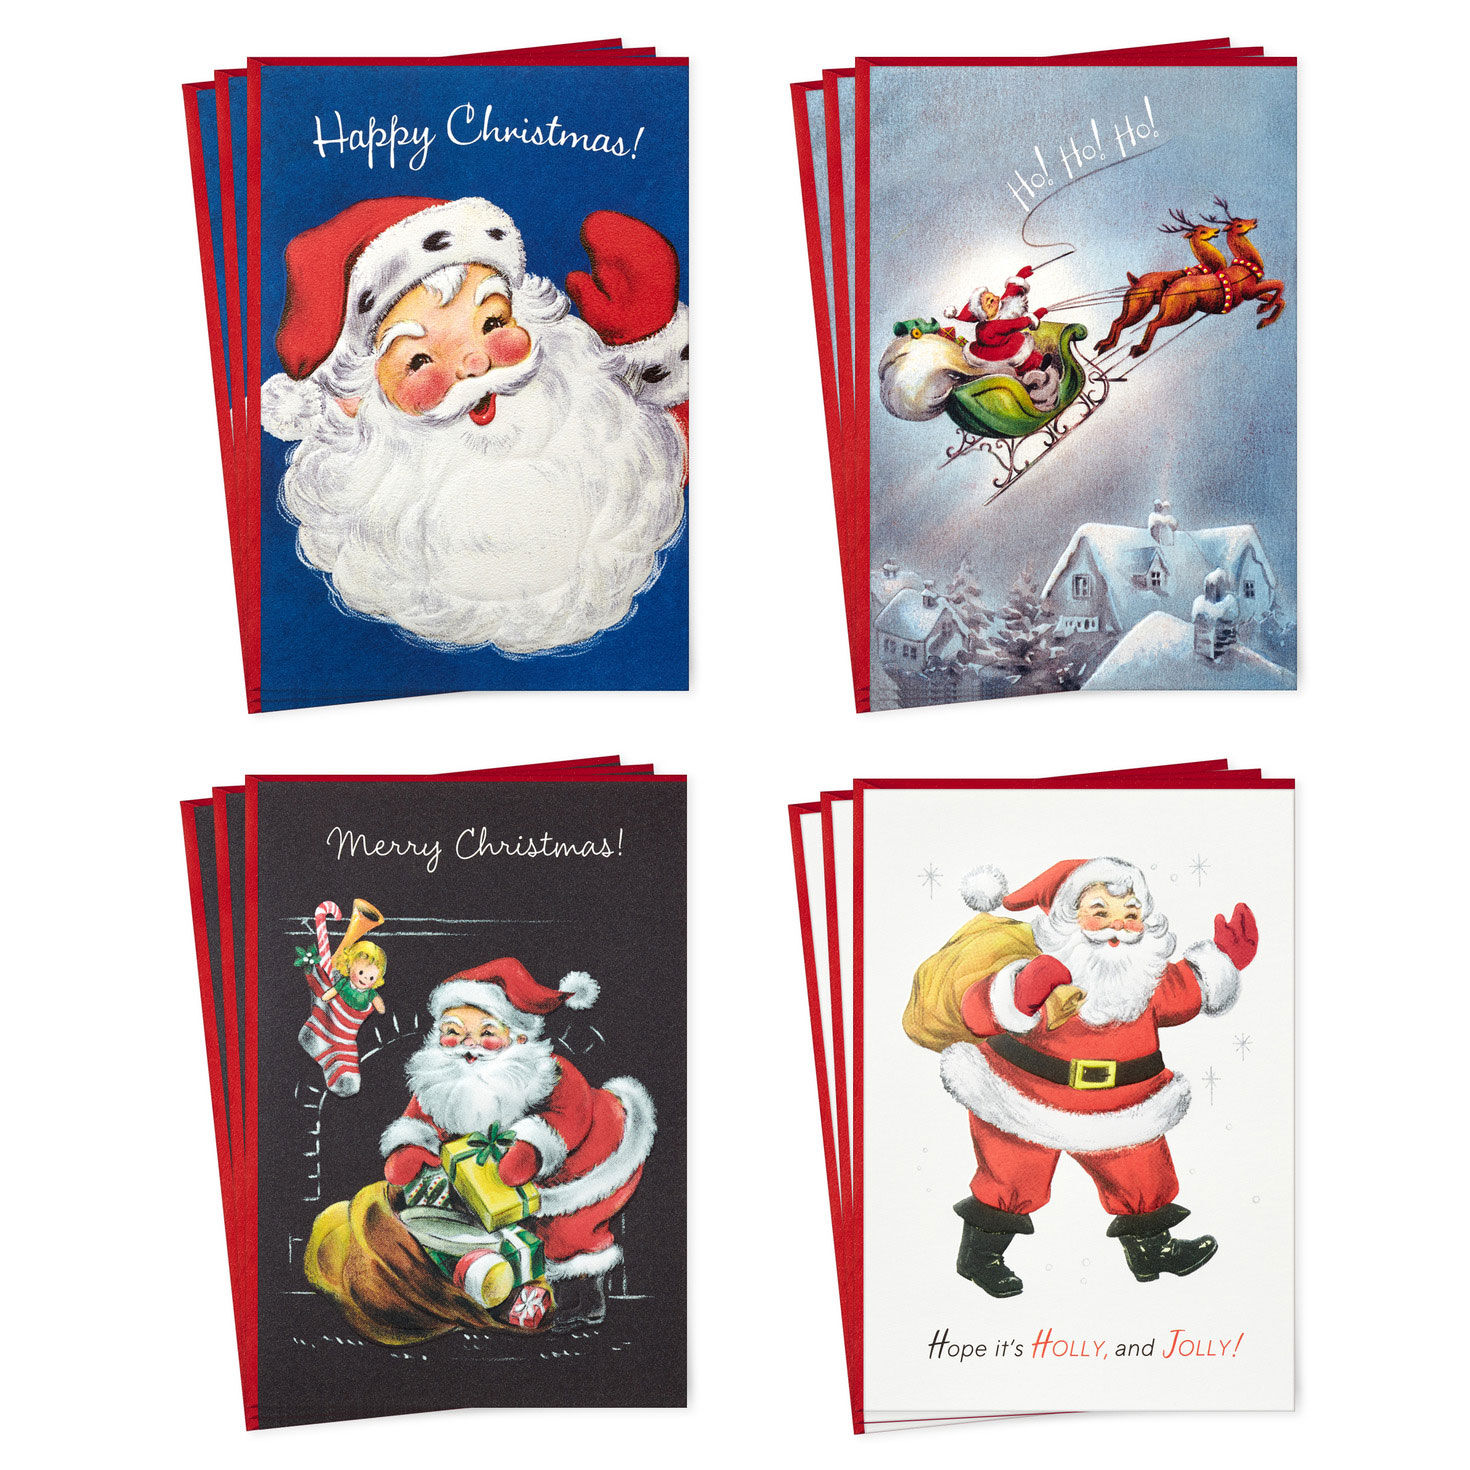 Southern Christmas 12 Days of Christmas 15 Boxed Christmas Cards 